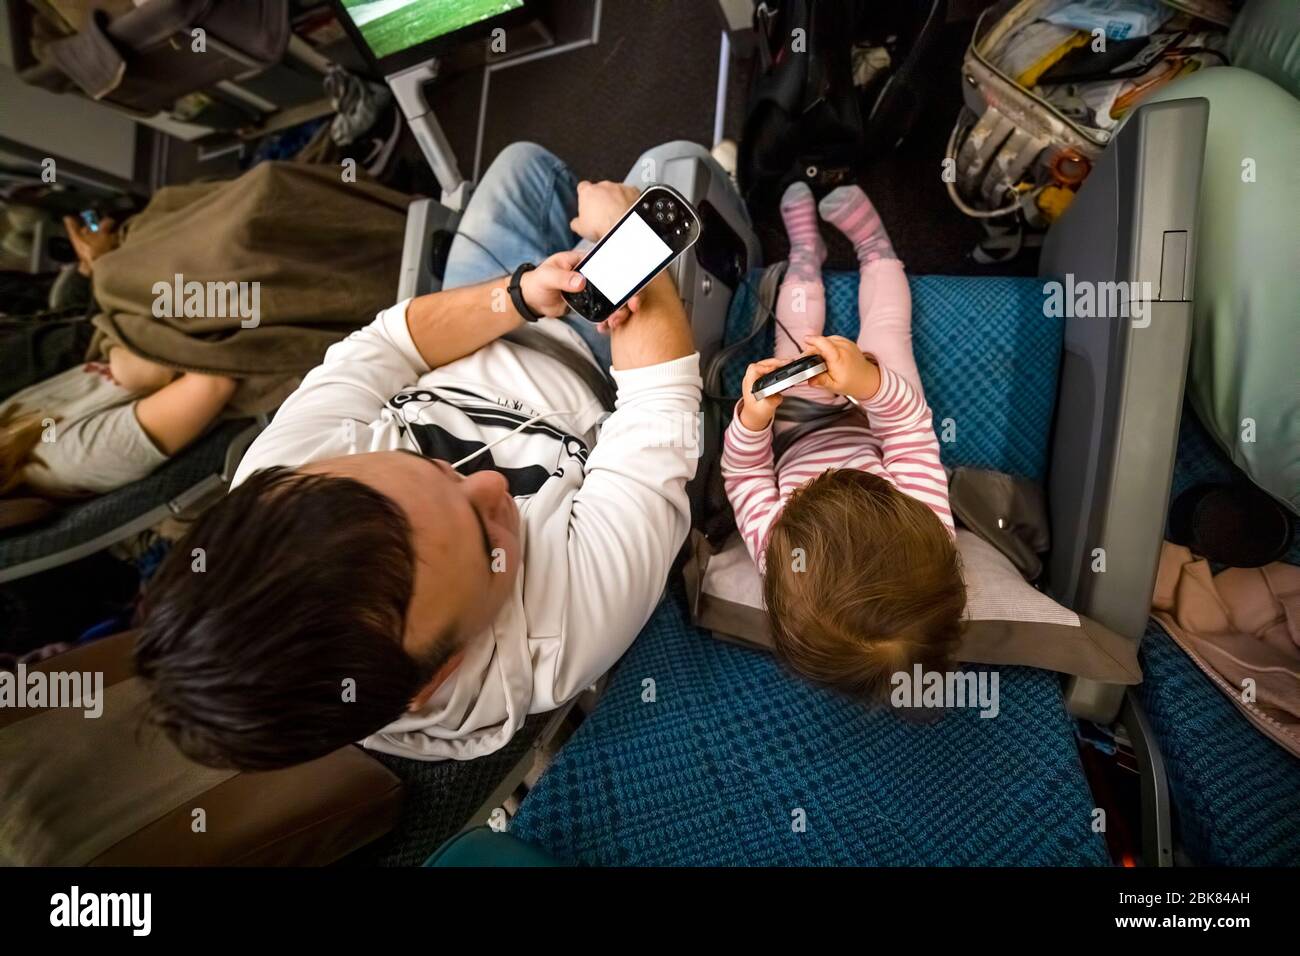 Unterhaltung an Bord des Flugzeugs. Papa und Baby sitzen im Flugzeug in Sesseln und haben Spaß beim Spielen im Multimediasystem consol Stockfoto